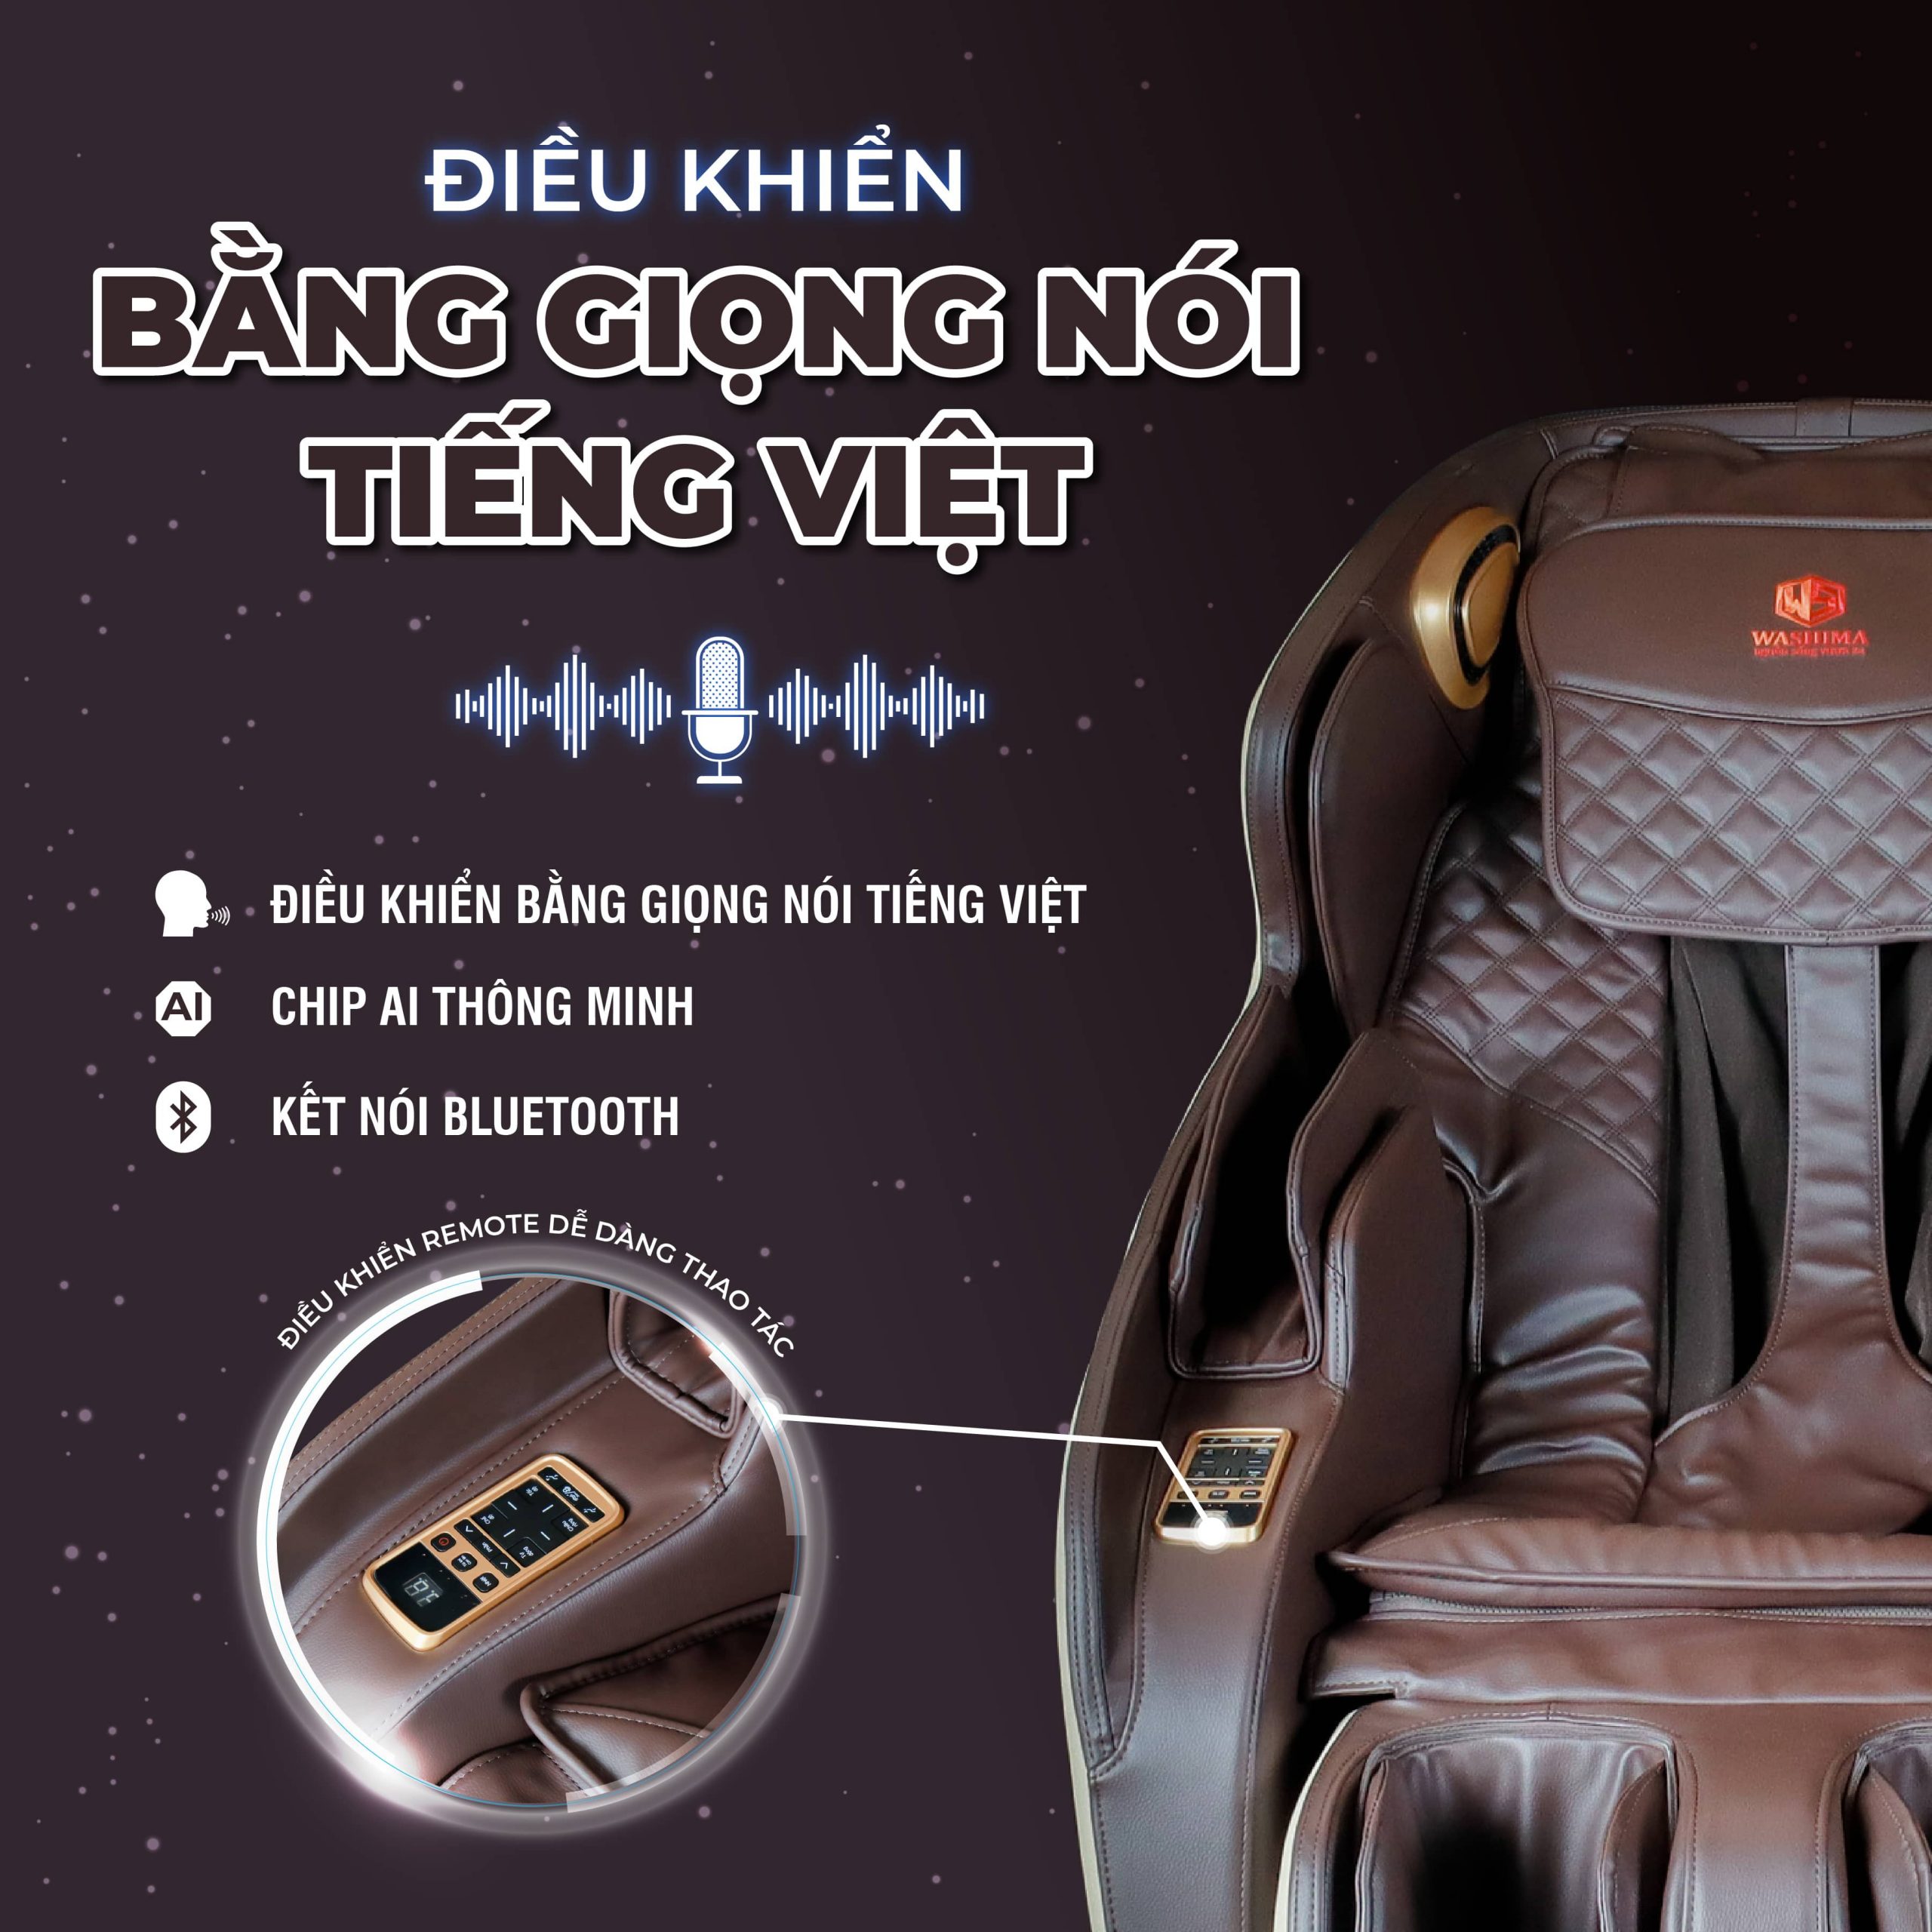 ghế massage điều khiển bằng giọng nói bằng Tiếng Việt tích hợp kết nối Bluetooth